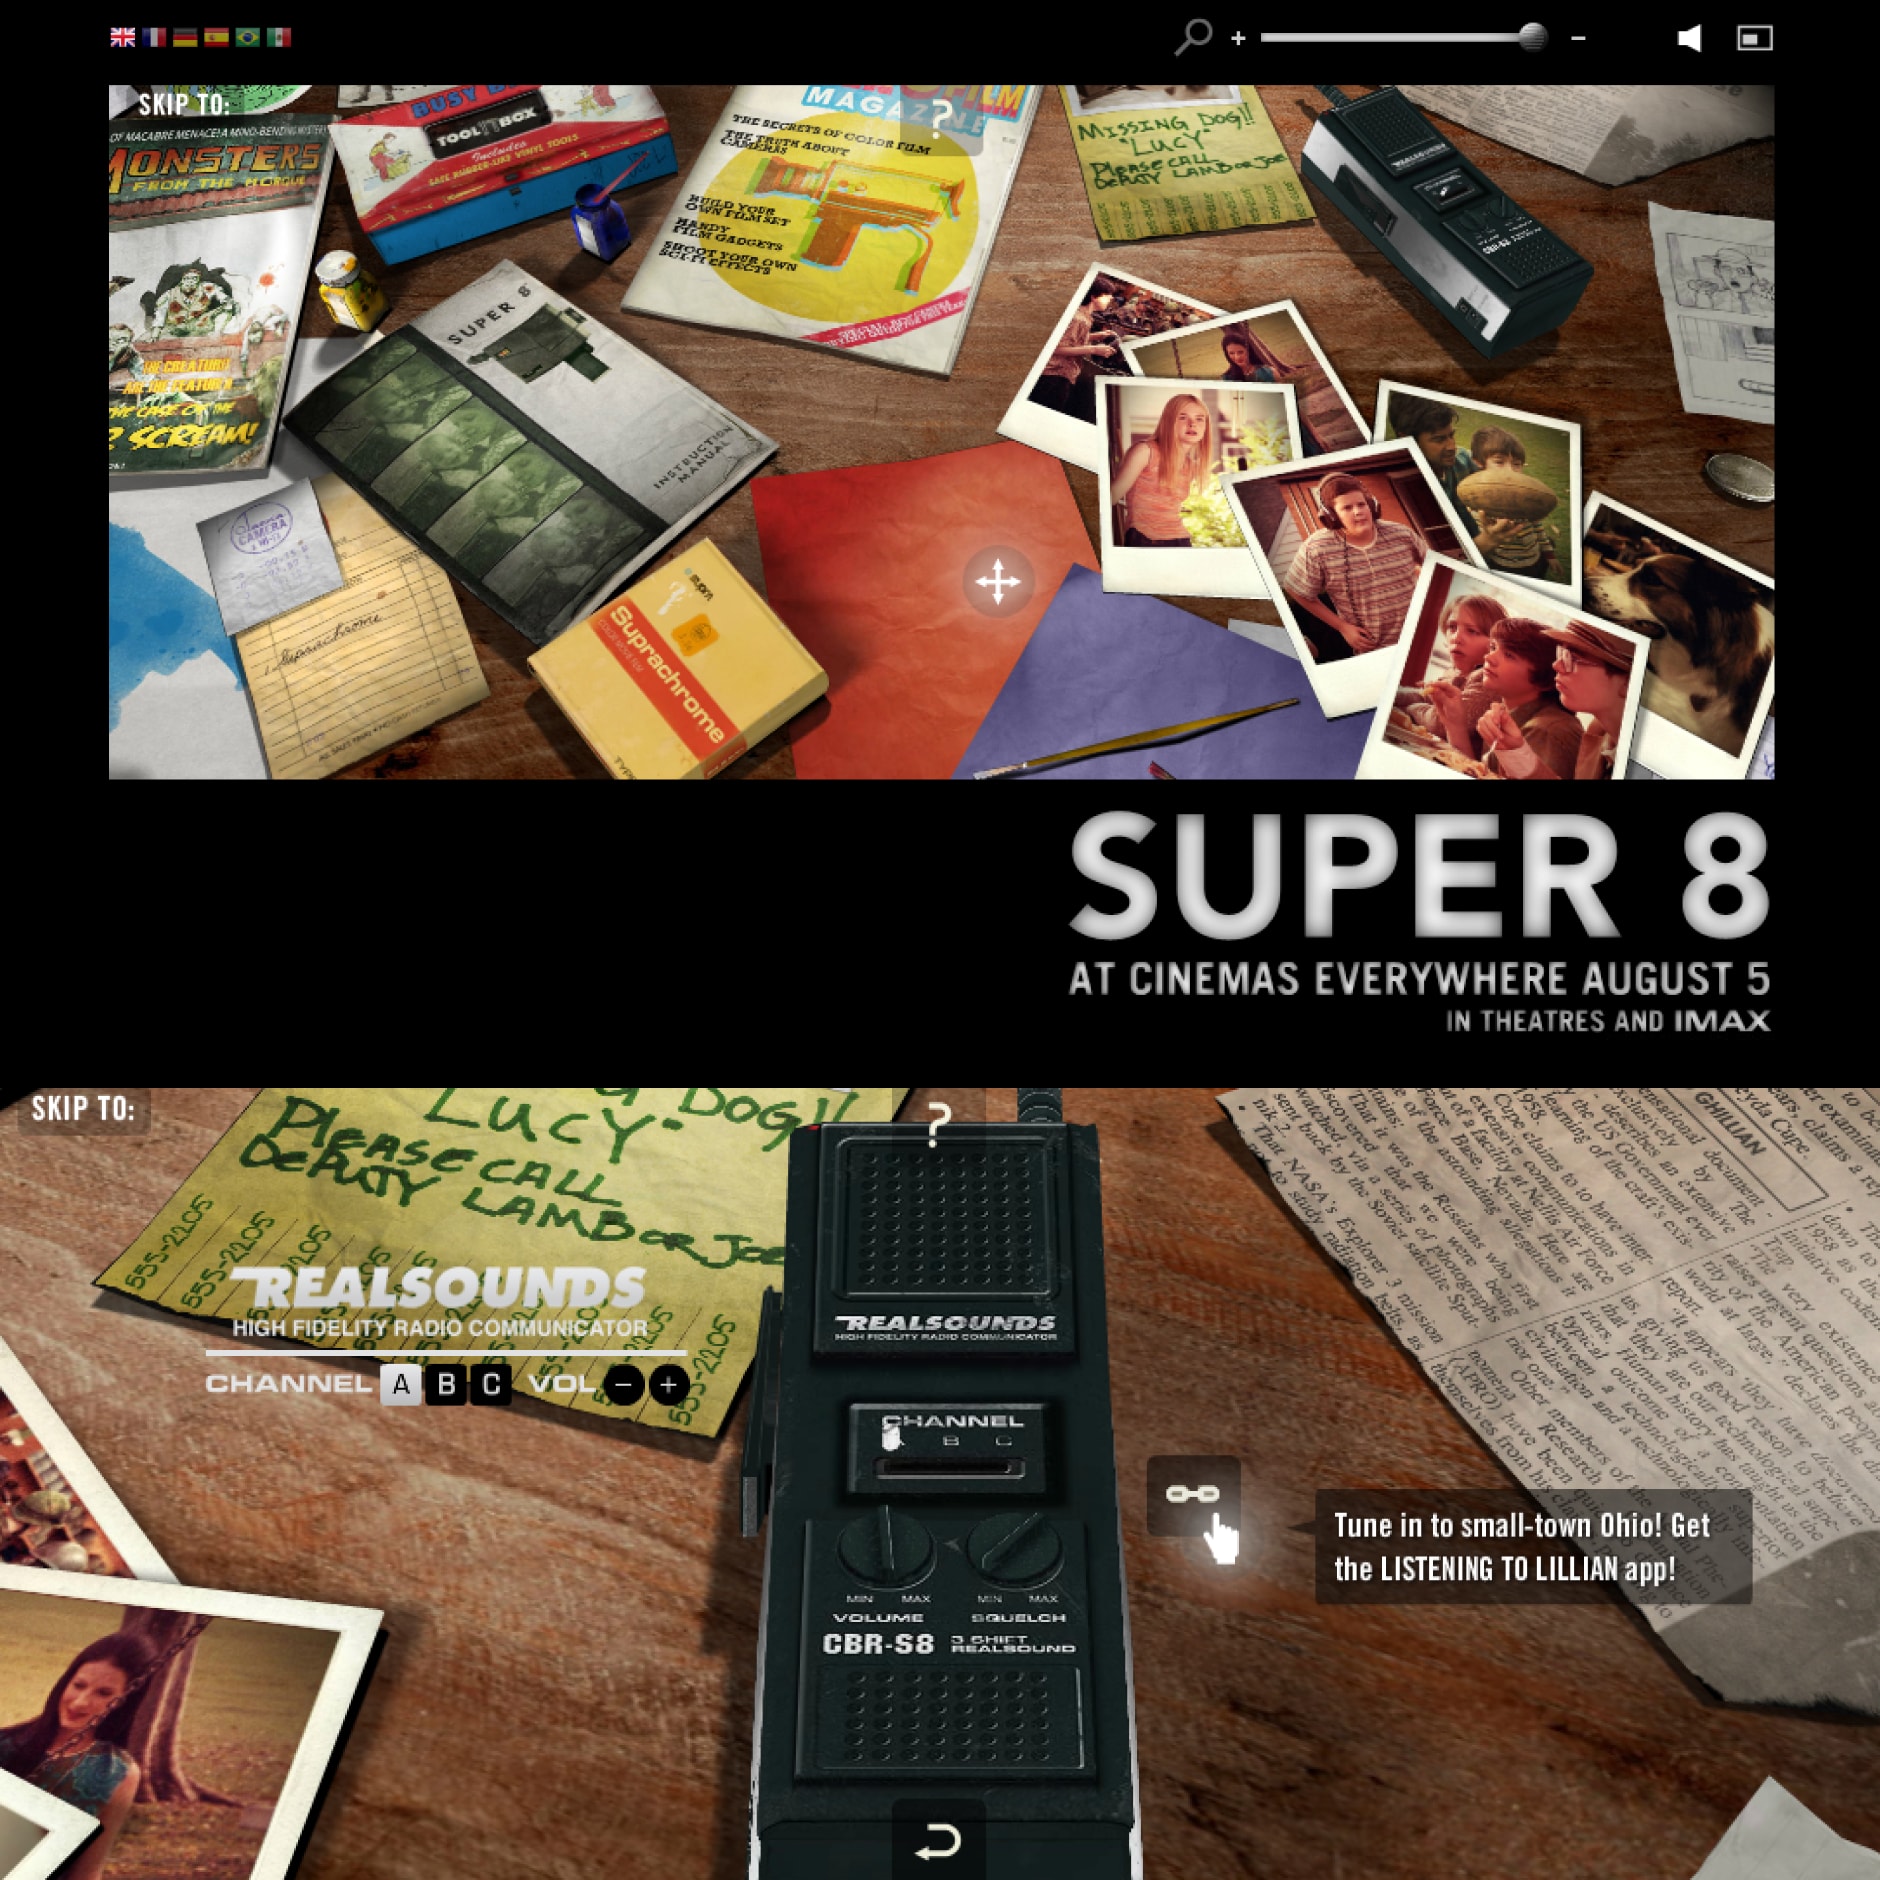 Super 8 film website